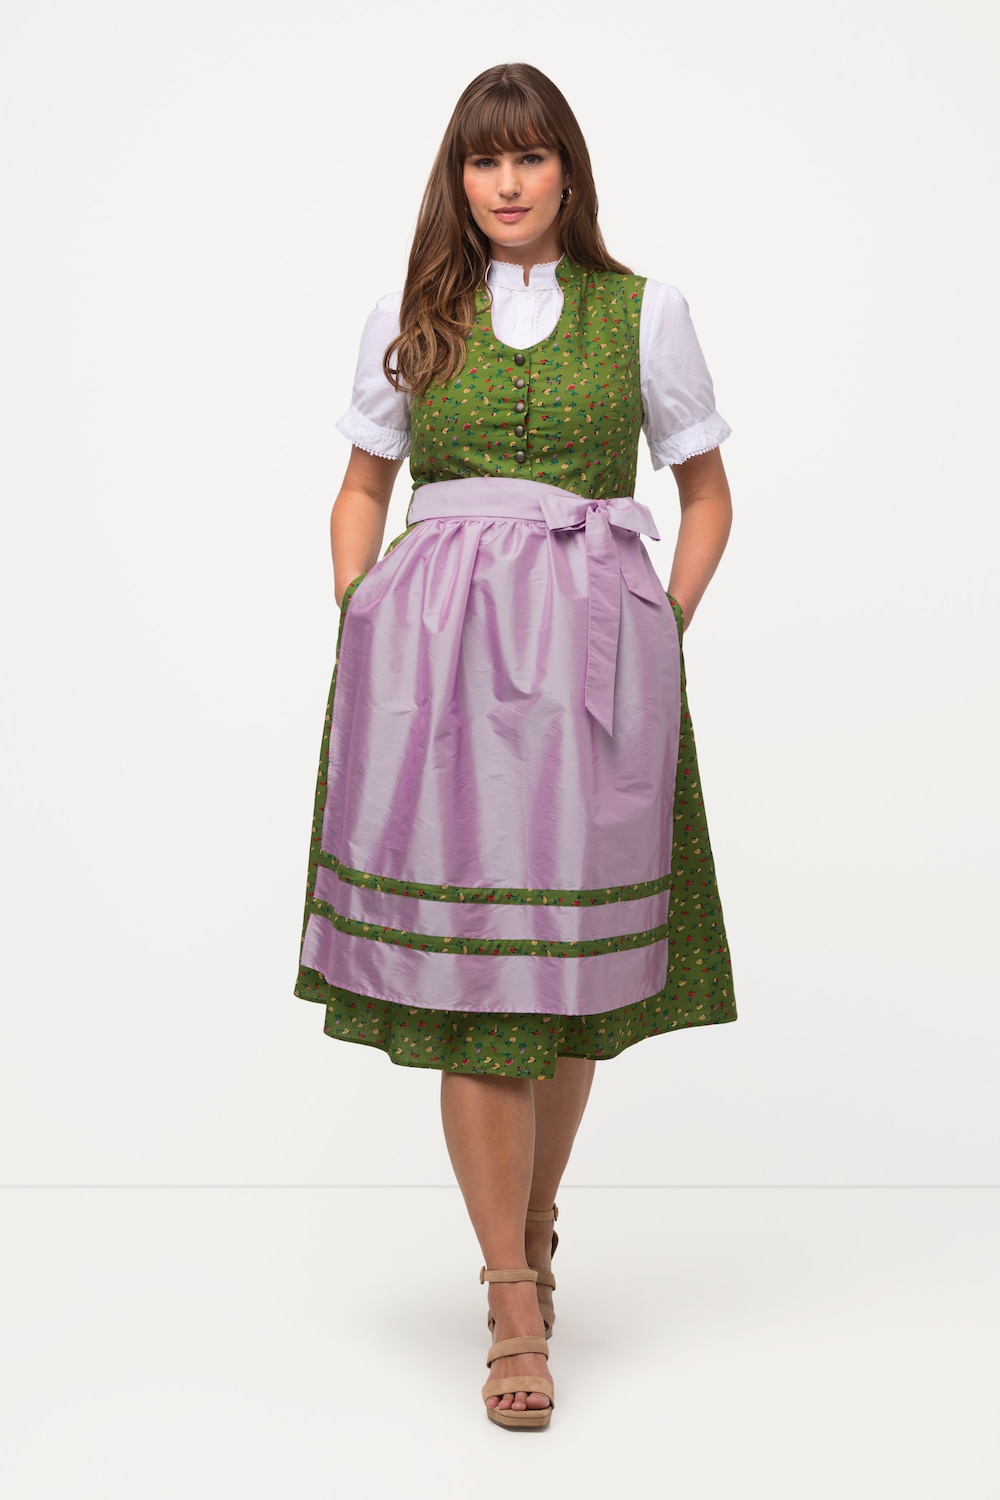 Grote Maten folklore jurk, Dames, groen, Maat: 44, Katoen/Polyester, Ulla Popken